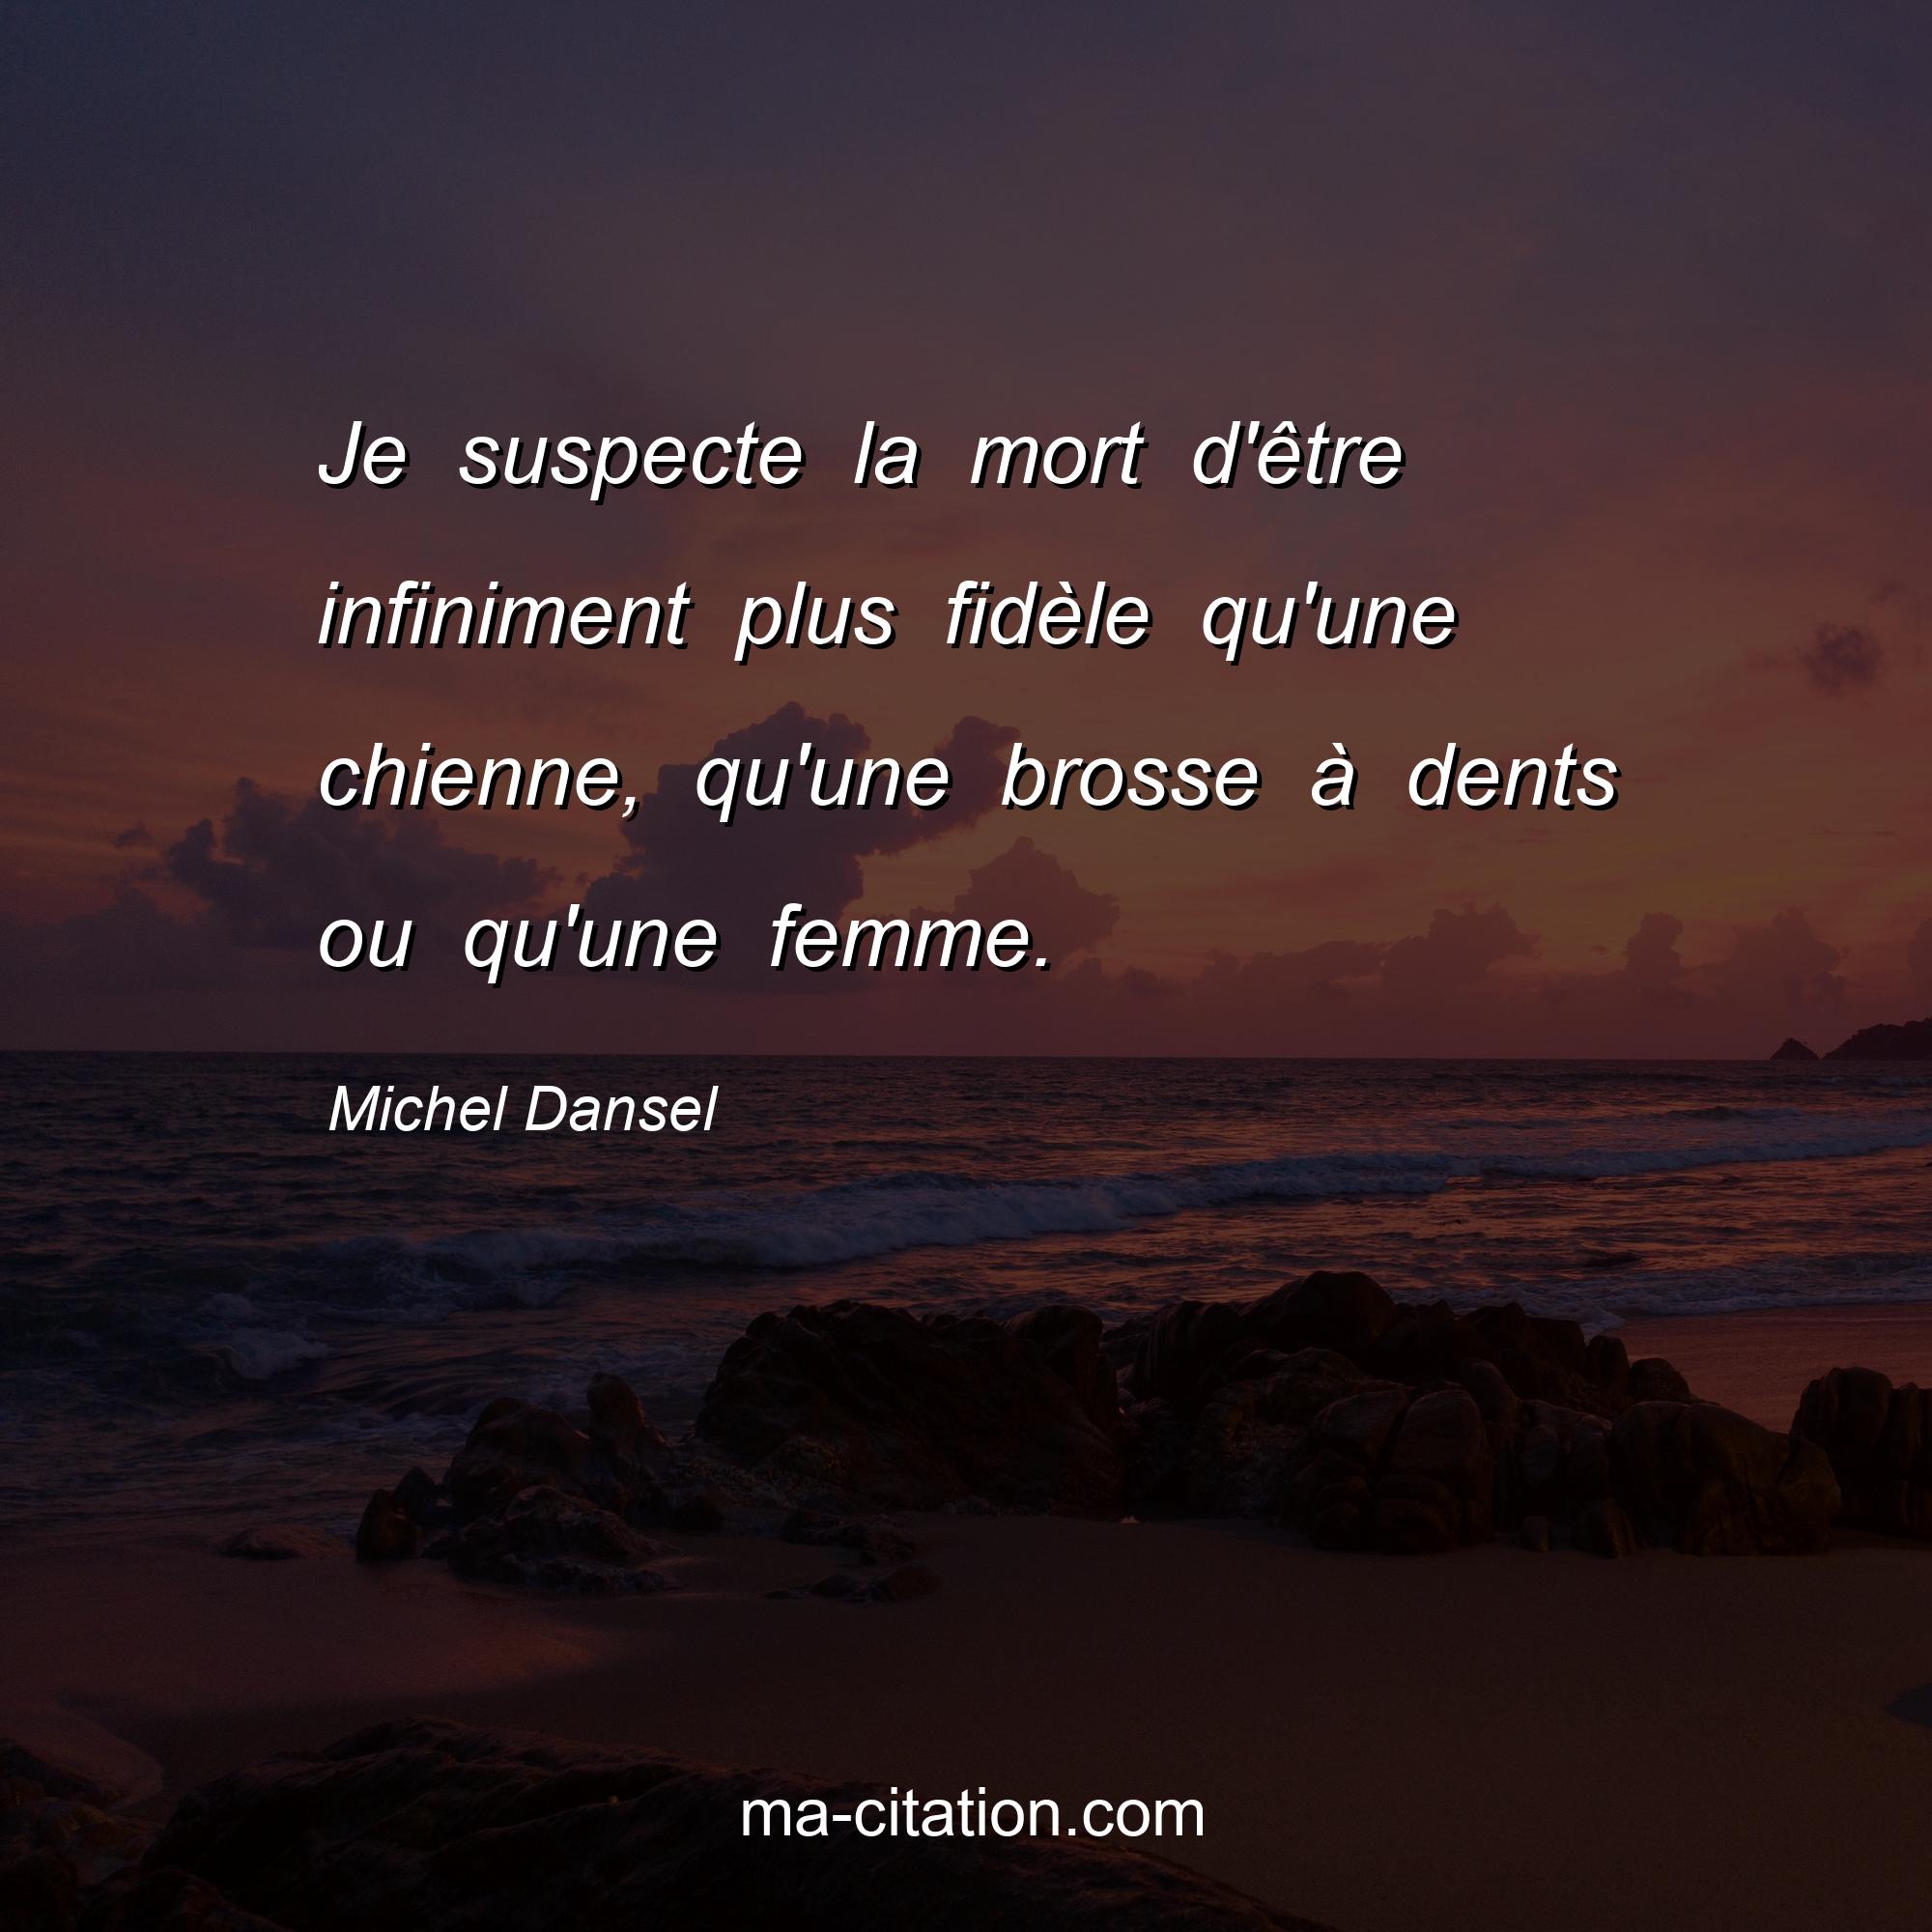 Michel Dansel : Je suspecte la mort d'être infiniment plus fidèle qu'une chienne, qu'une brosse à dents ou qu'une femme.